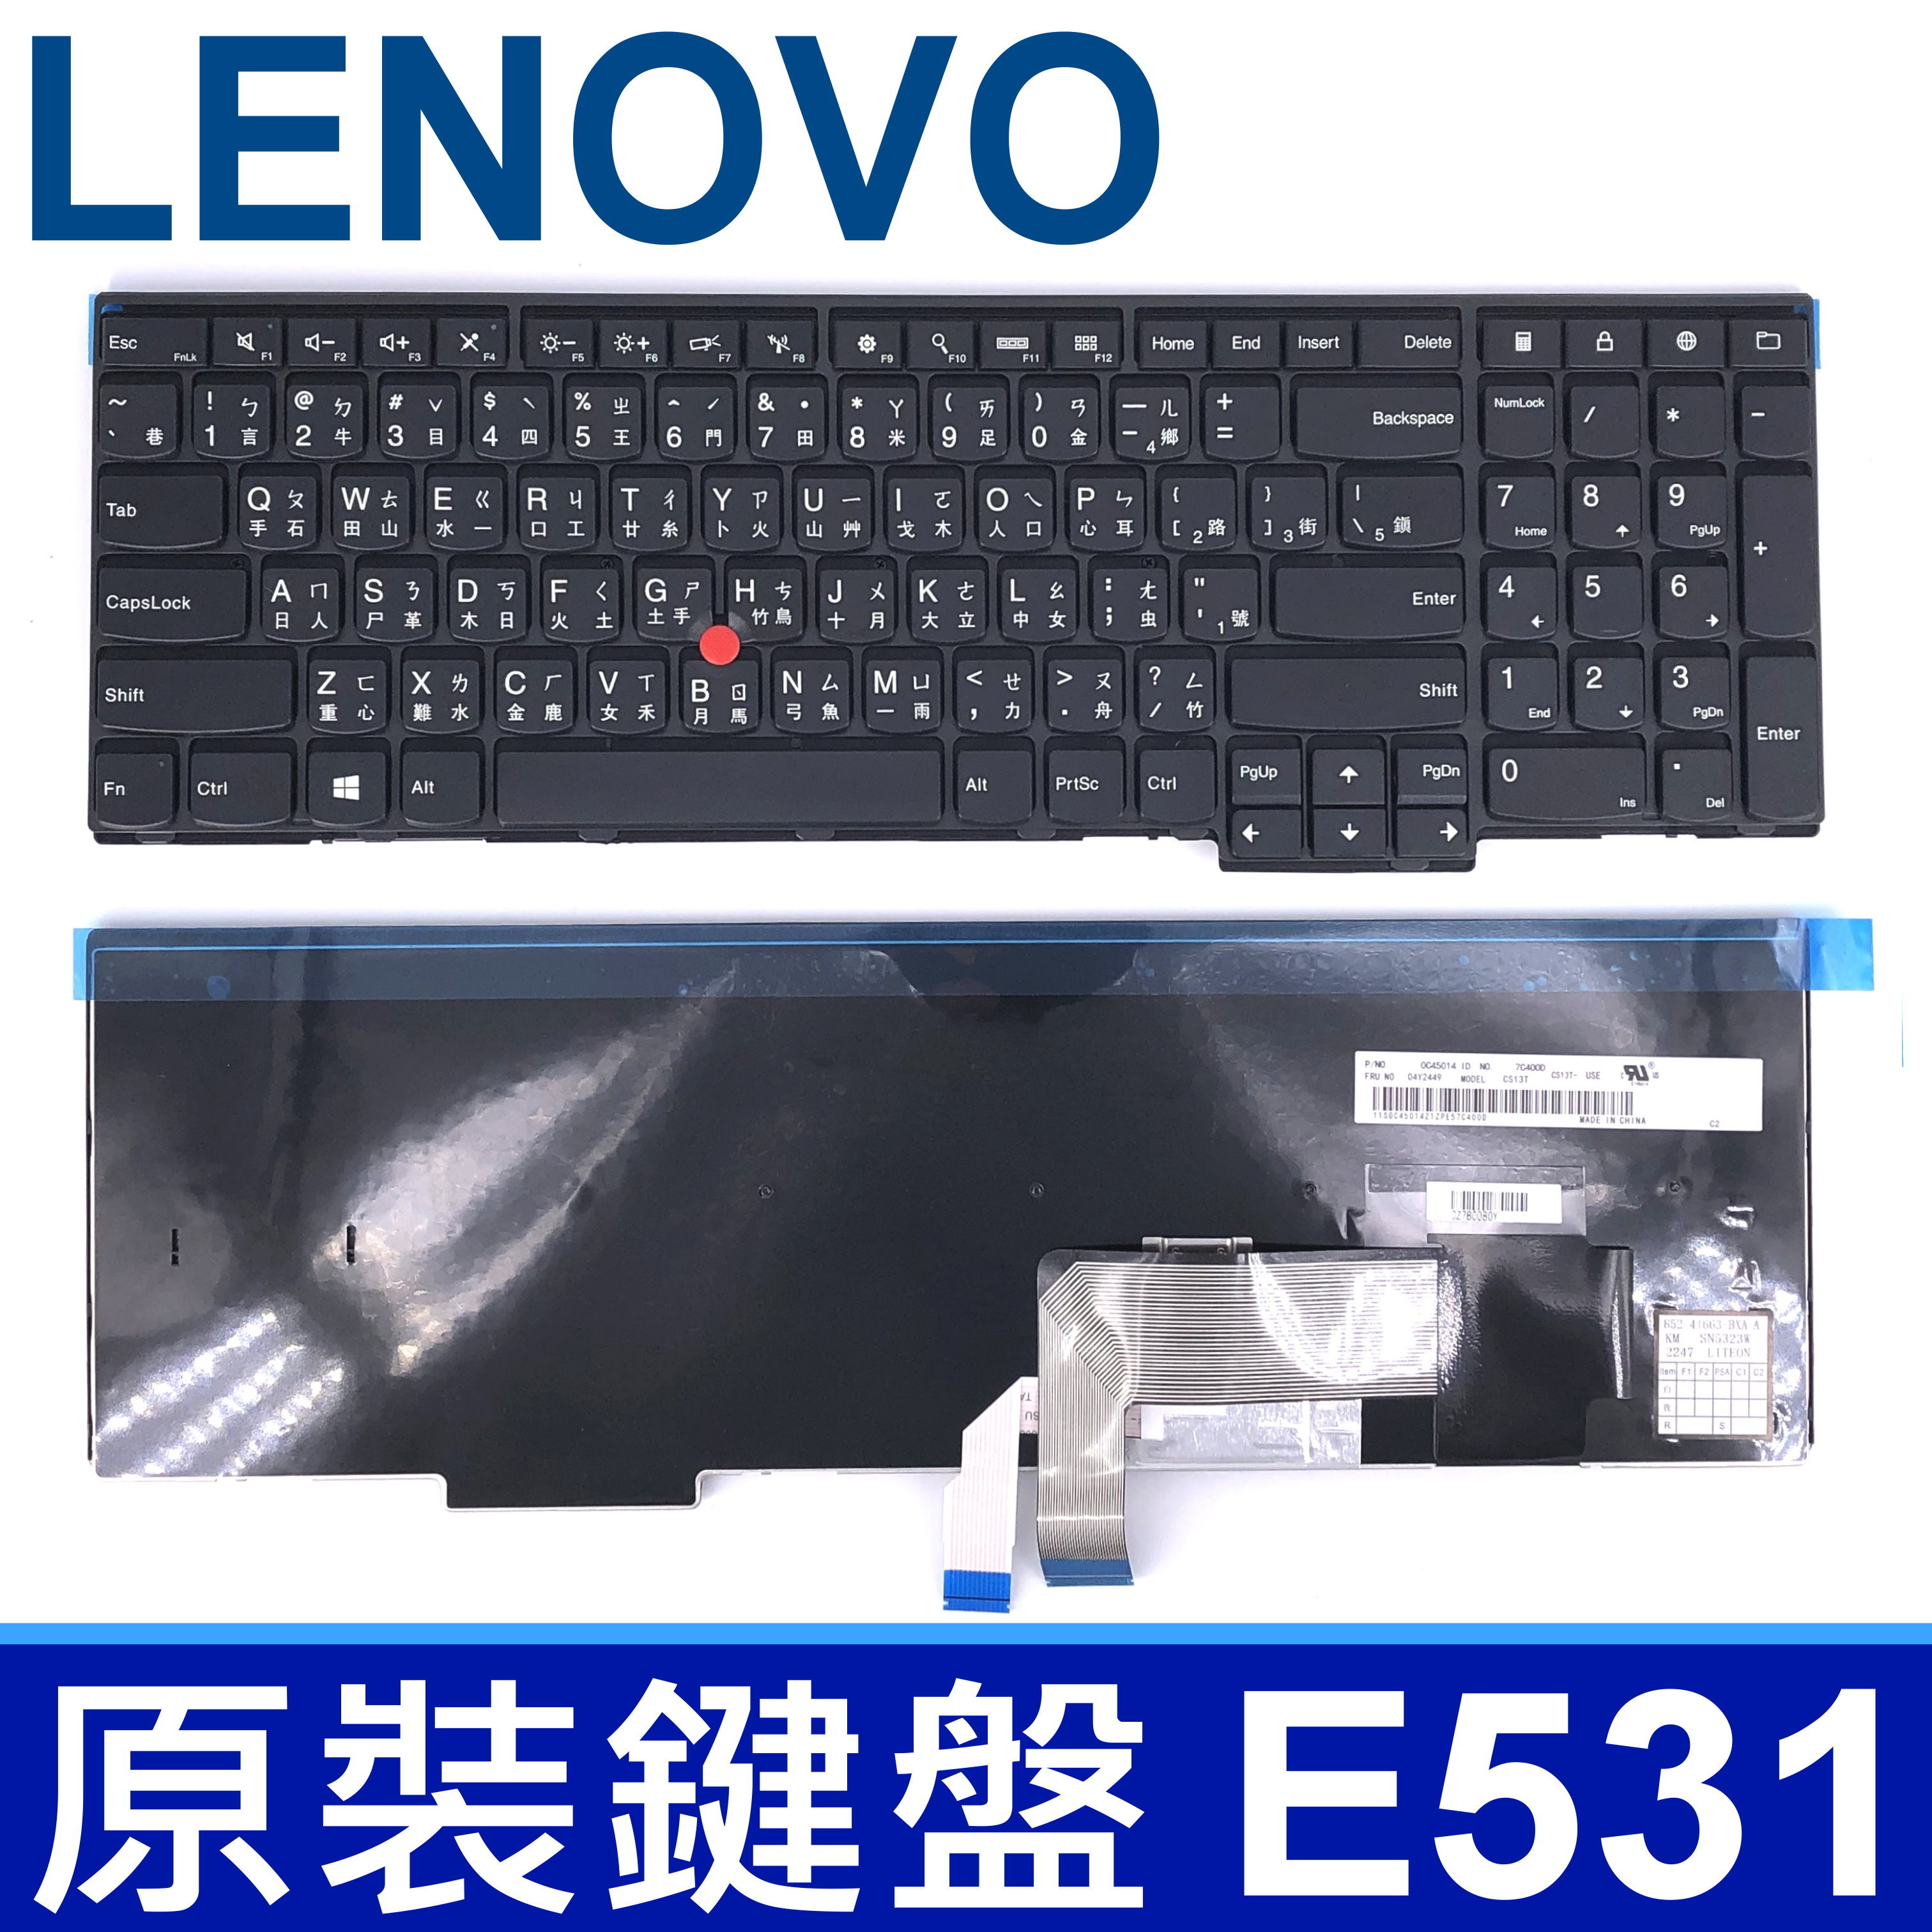 LENOVO E531 指點 繁體中文 鍵盤 E540 L540 T540 T540P T550 W540 W541 W550 W550S Grant-105RC MP-12R23RC-G62